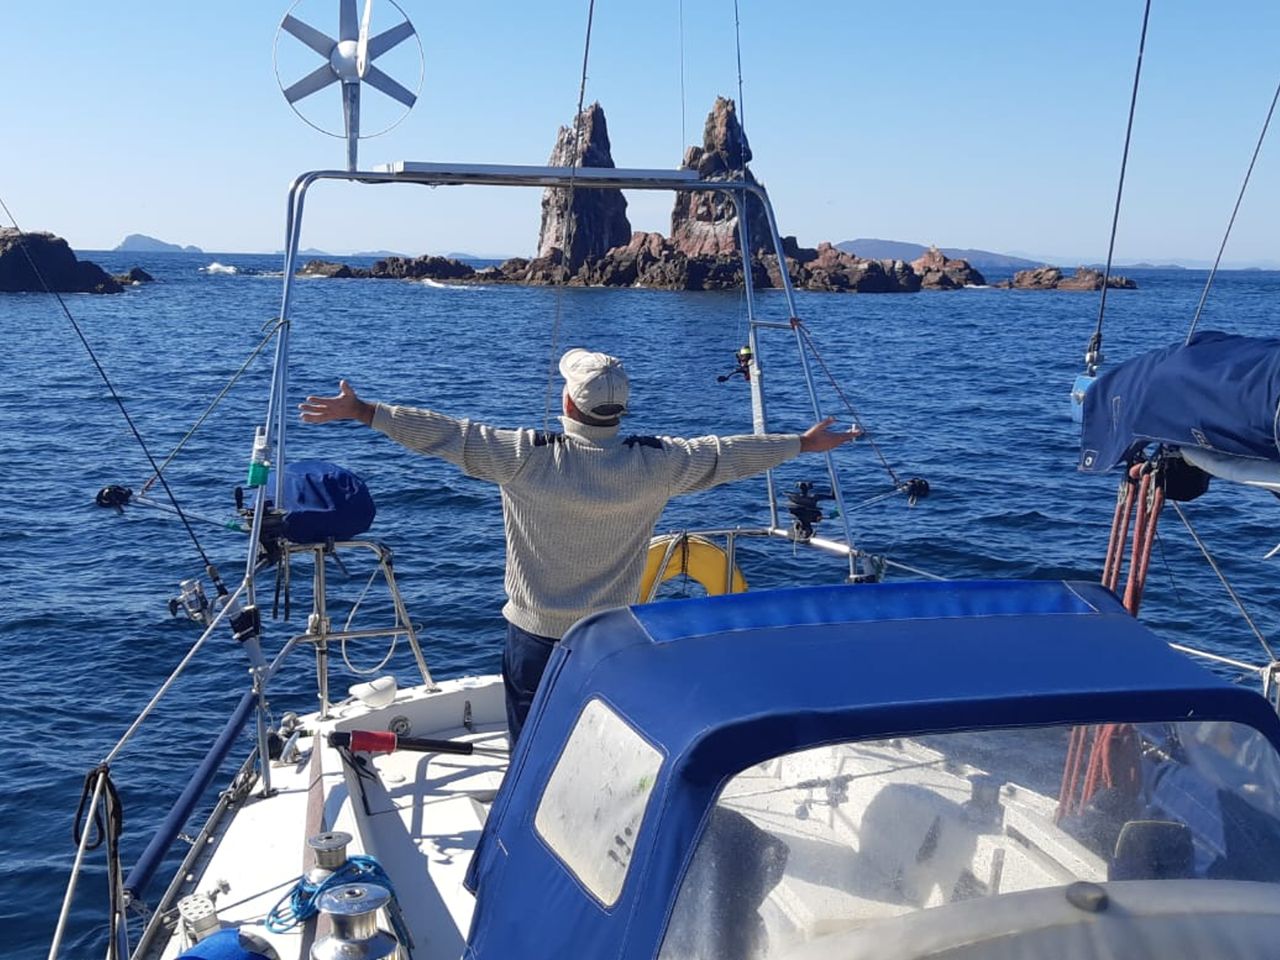 Прогулка на парусной яхте к островам Владивостока | Цена 44000₽, отзывы, описание экскурсии